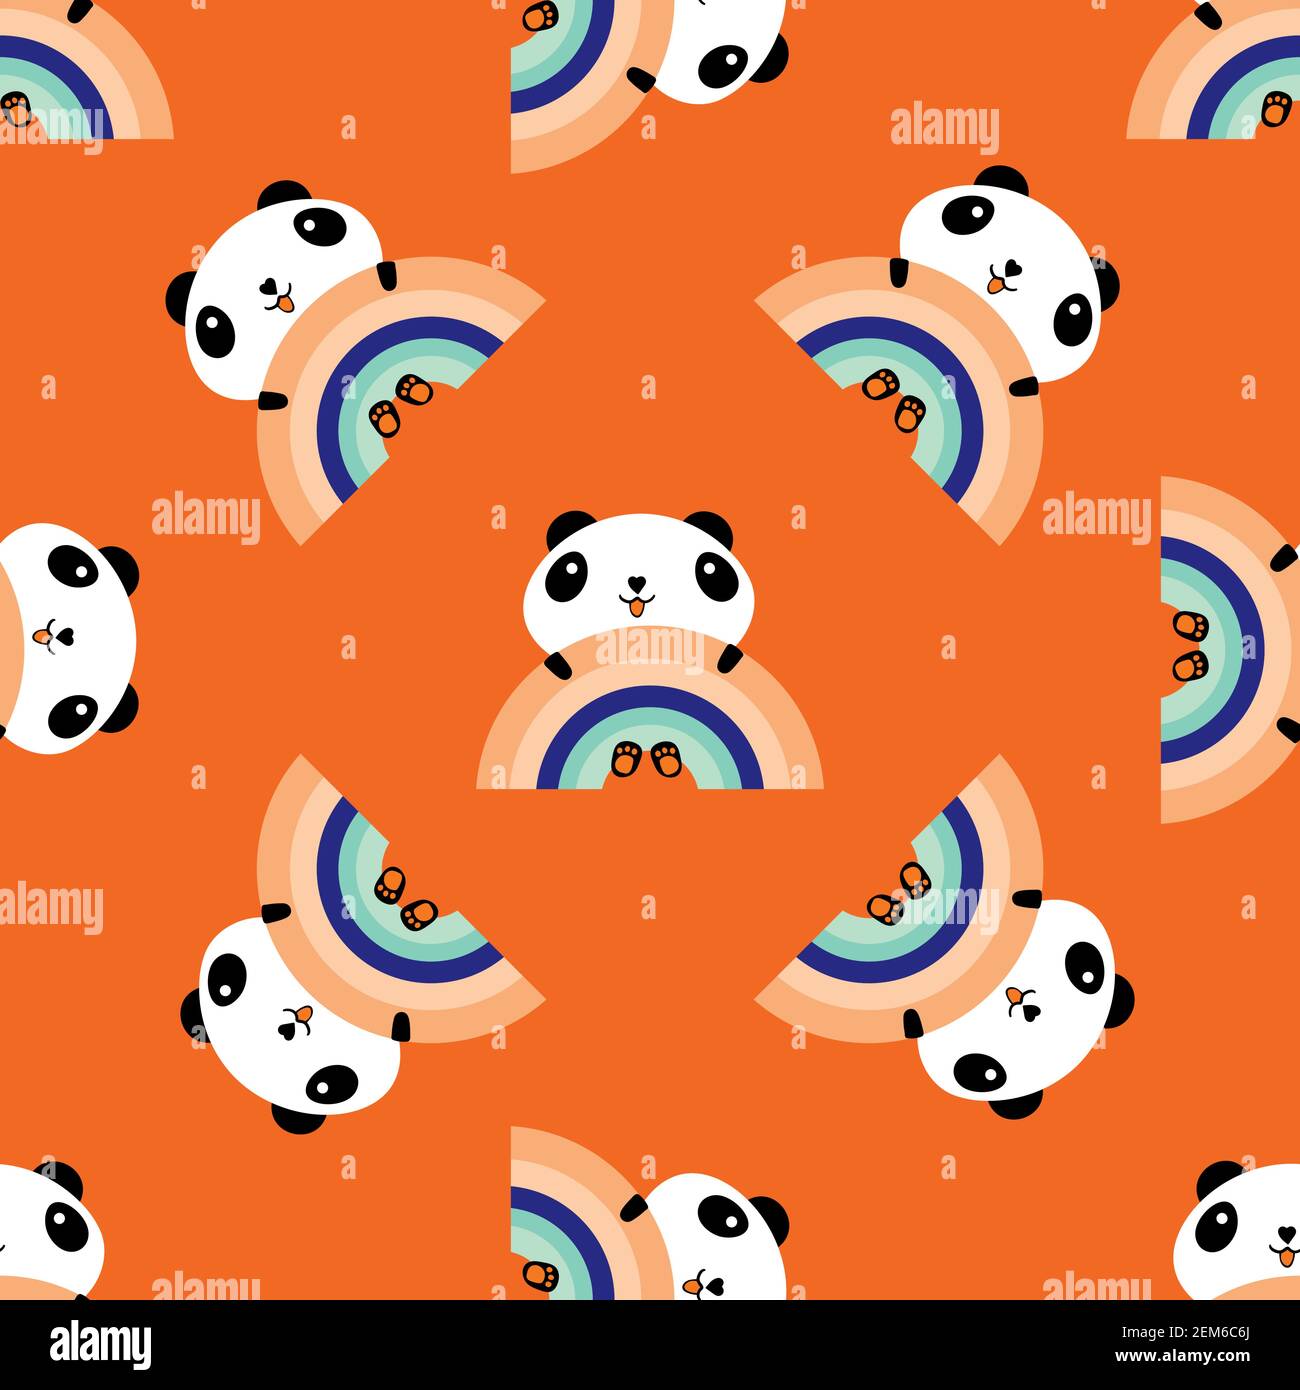 Kawaii panda animal cartoon vector design Stock Vector Image & Art - Alamy